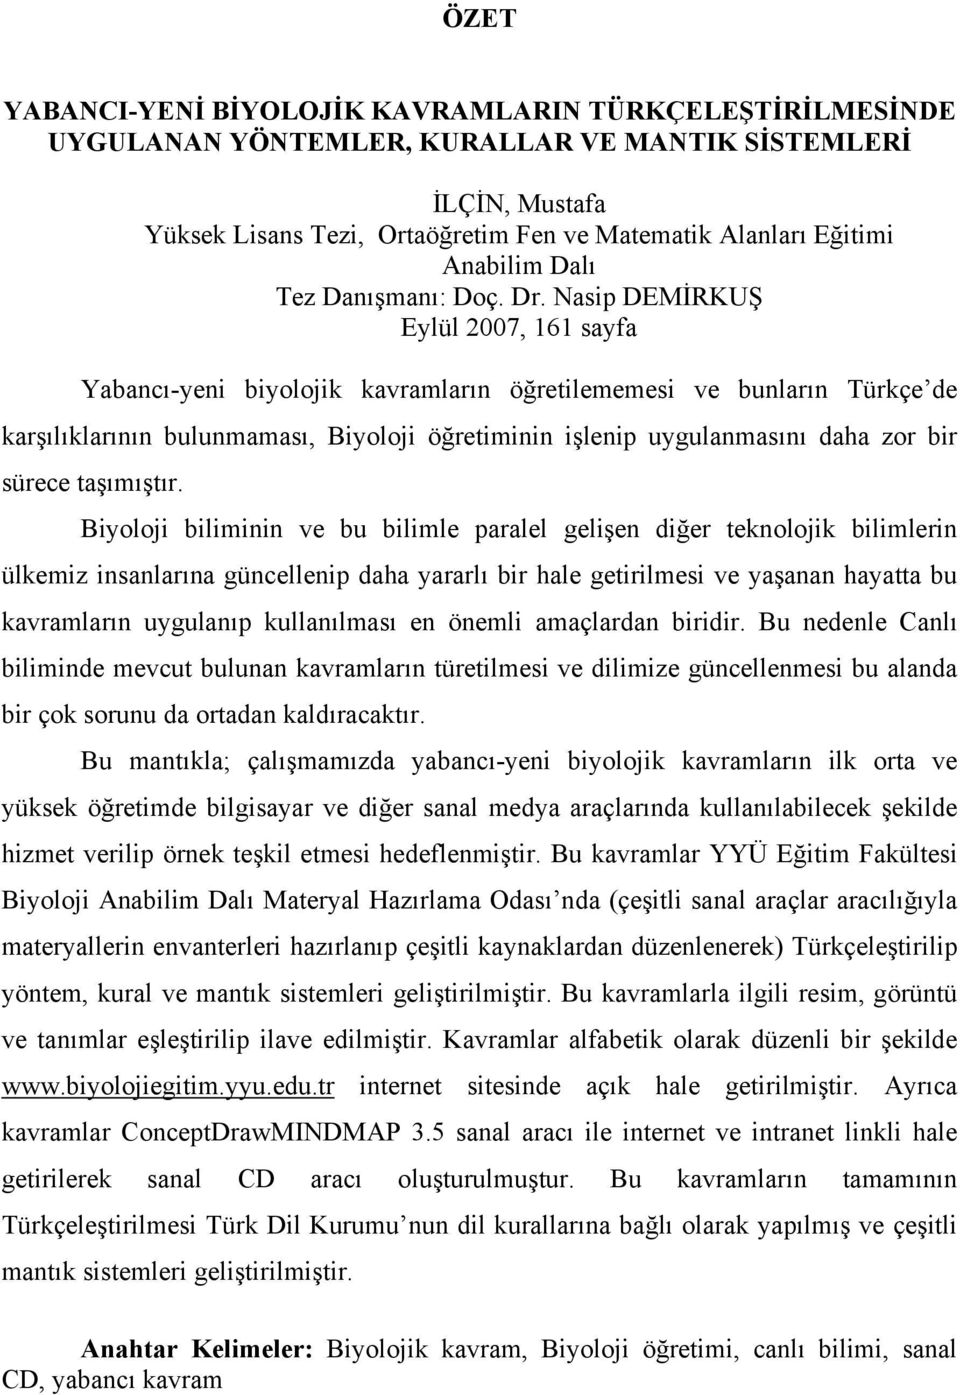 Nasip DEMİRKUŞ Eylül 2007, 161 sayfa Yabancı-yeni biyolojik kavramların öğretilememesi ve bunların Türkçe de karşılıklarının bulunmaması, Biyoloji öğretiminin işlenip uygulanmasını daha zor bir